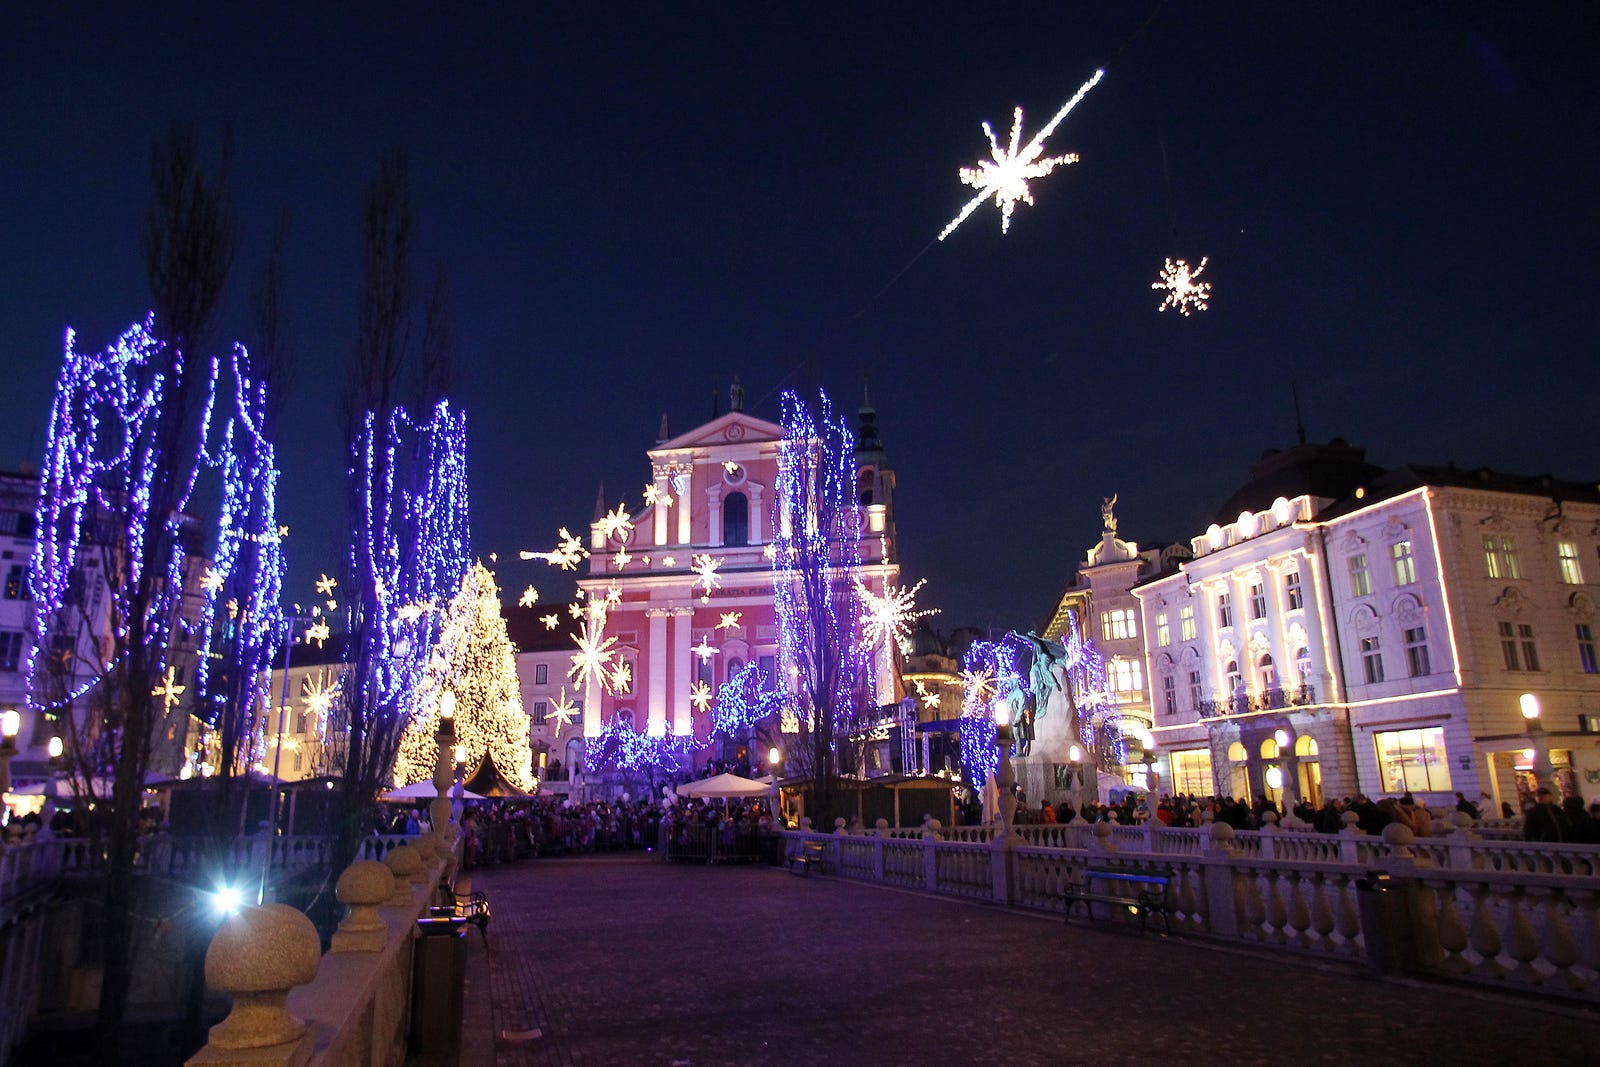 Le date e gli eventi da non perdere nella Lubiana che aspetta il Natale |  by Lovely Trips | LovelyTripsBlog | Medium